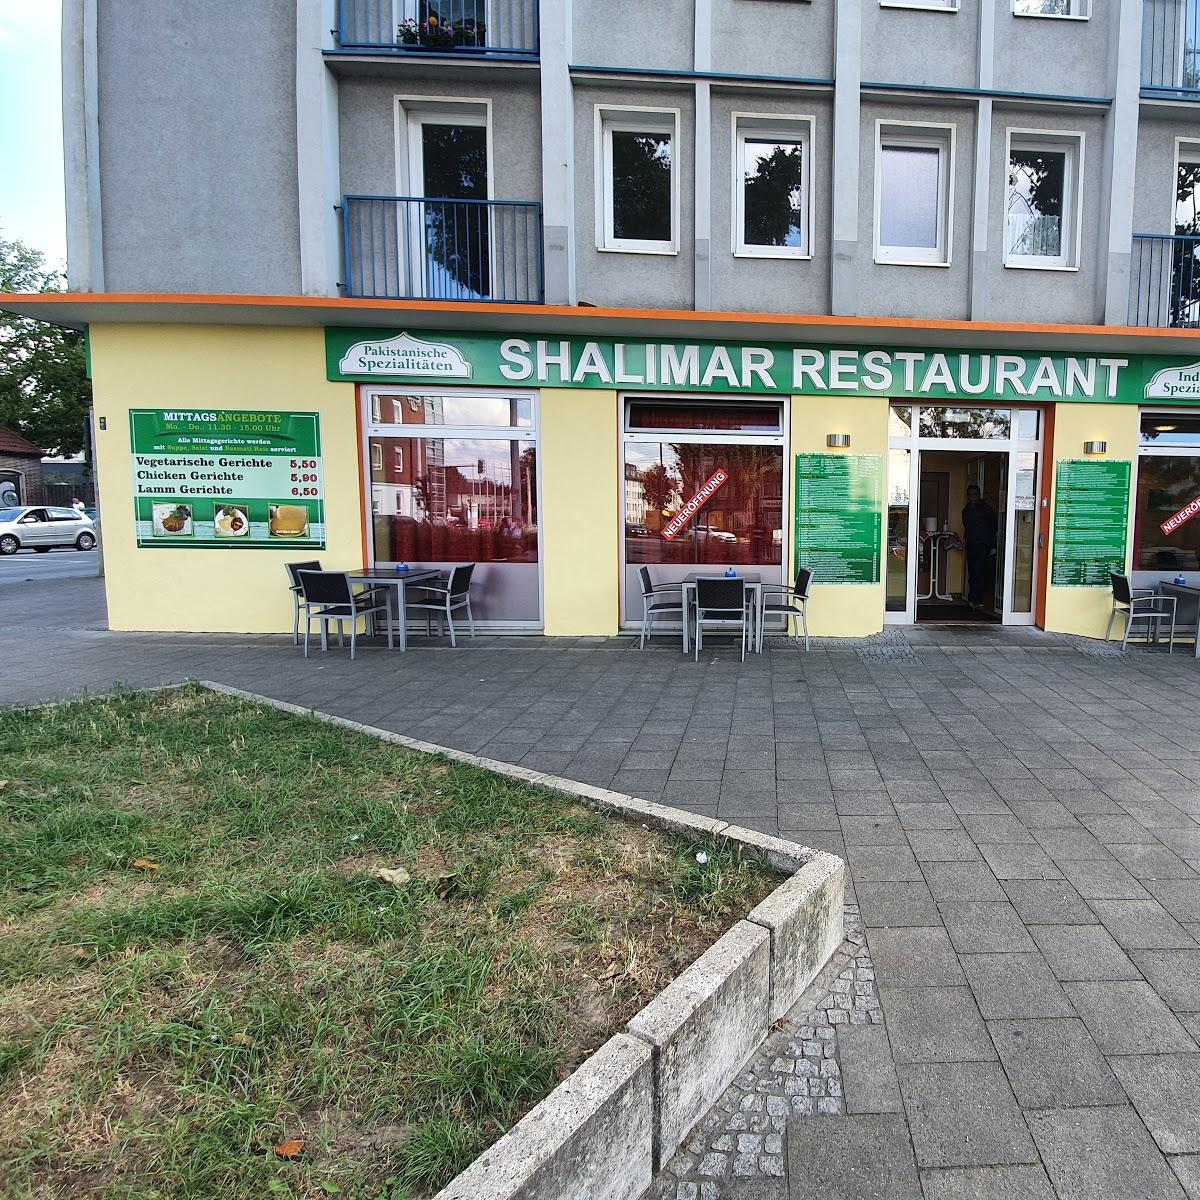 Restaurant "Shalimar Restaurant" in Witten